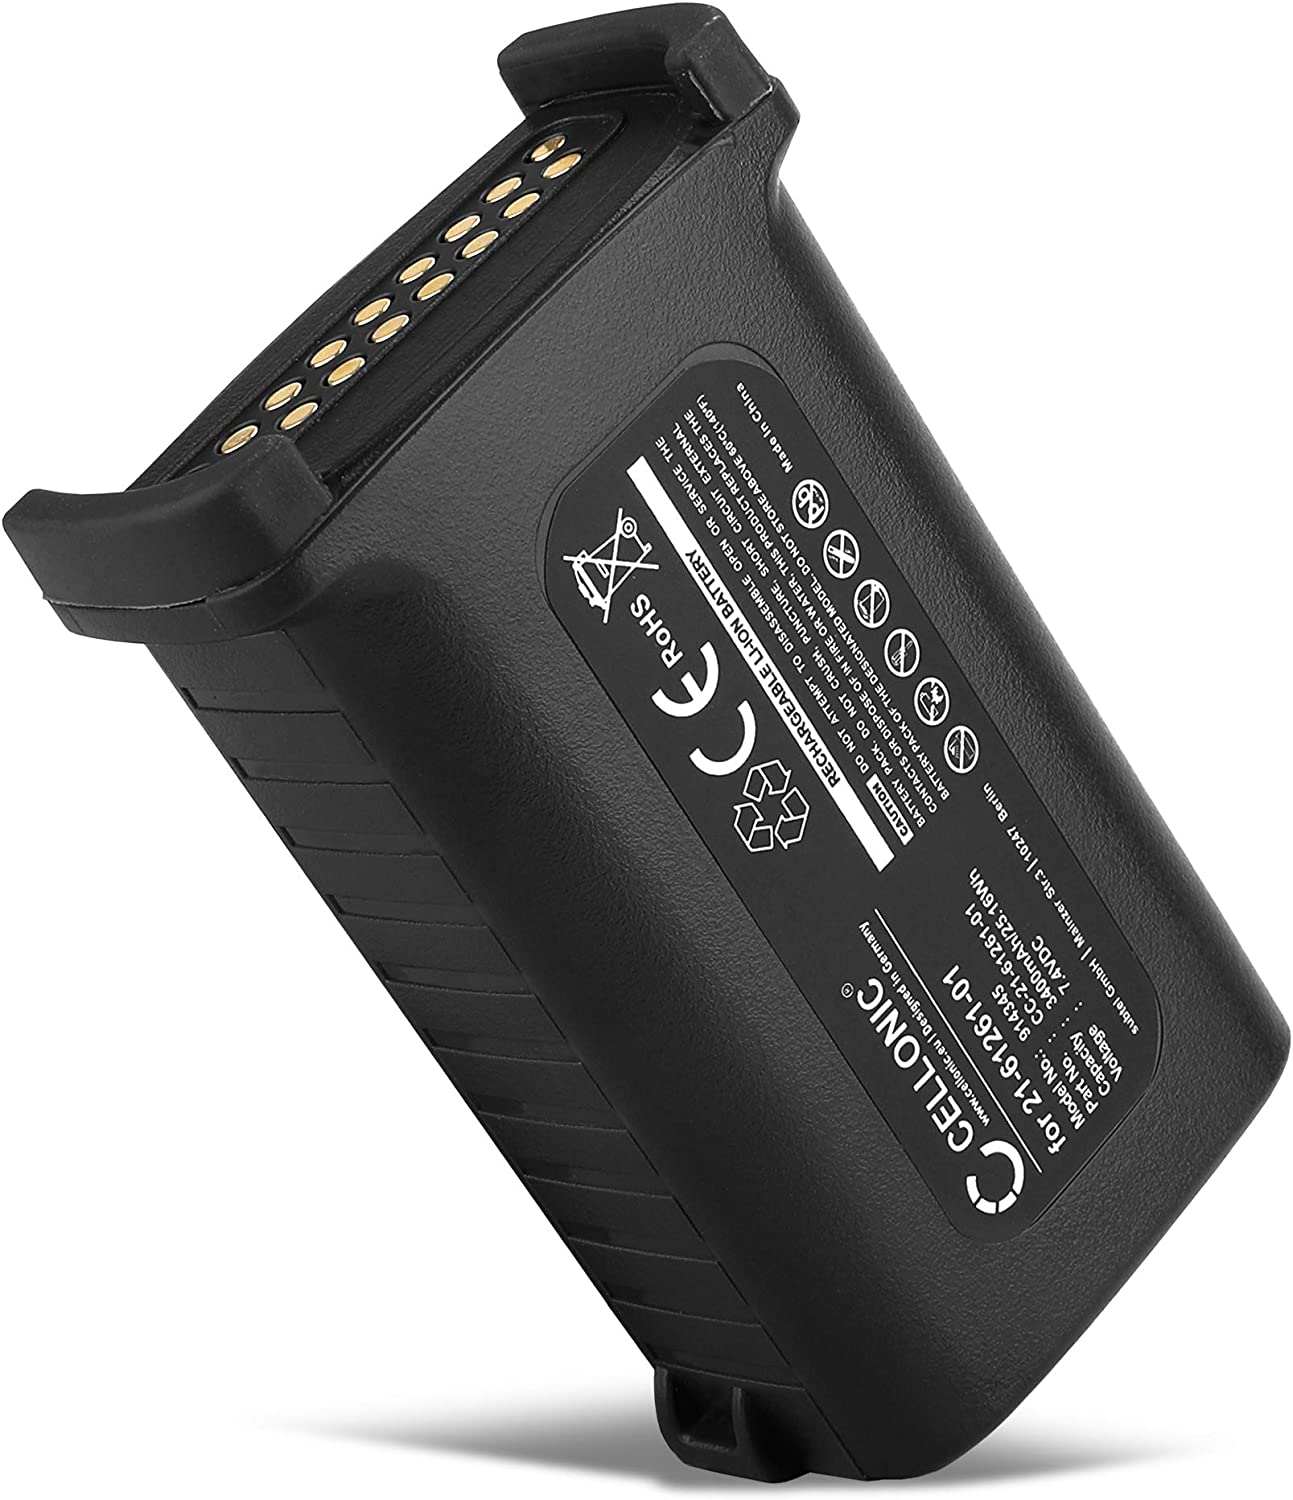 CELLONIC Batería 82-111734-02, 21-65587-02 Compatible con Lector código de Barras Motorola Symbol MC9090, MC9000, MC9010, MC9050, MC9060 Battery 3400mAh Pila Recargable